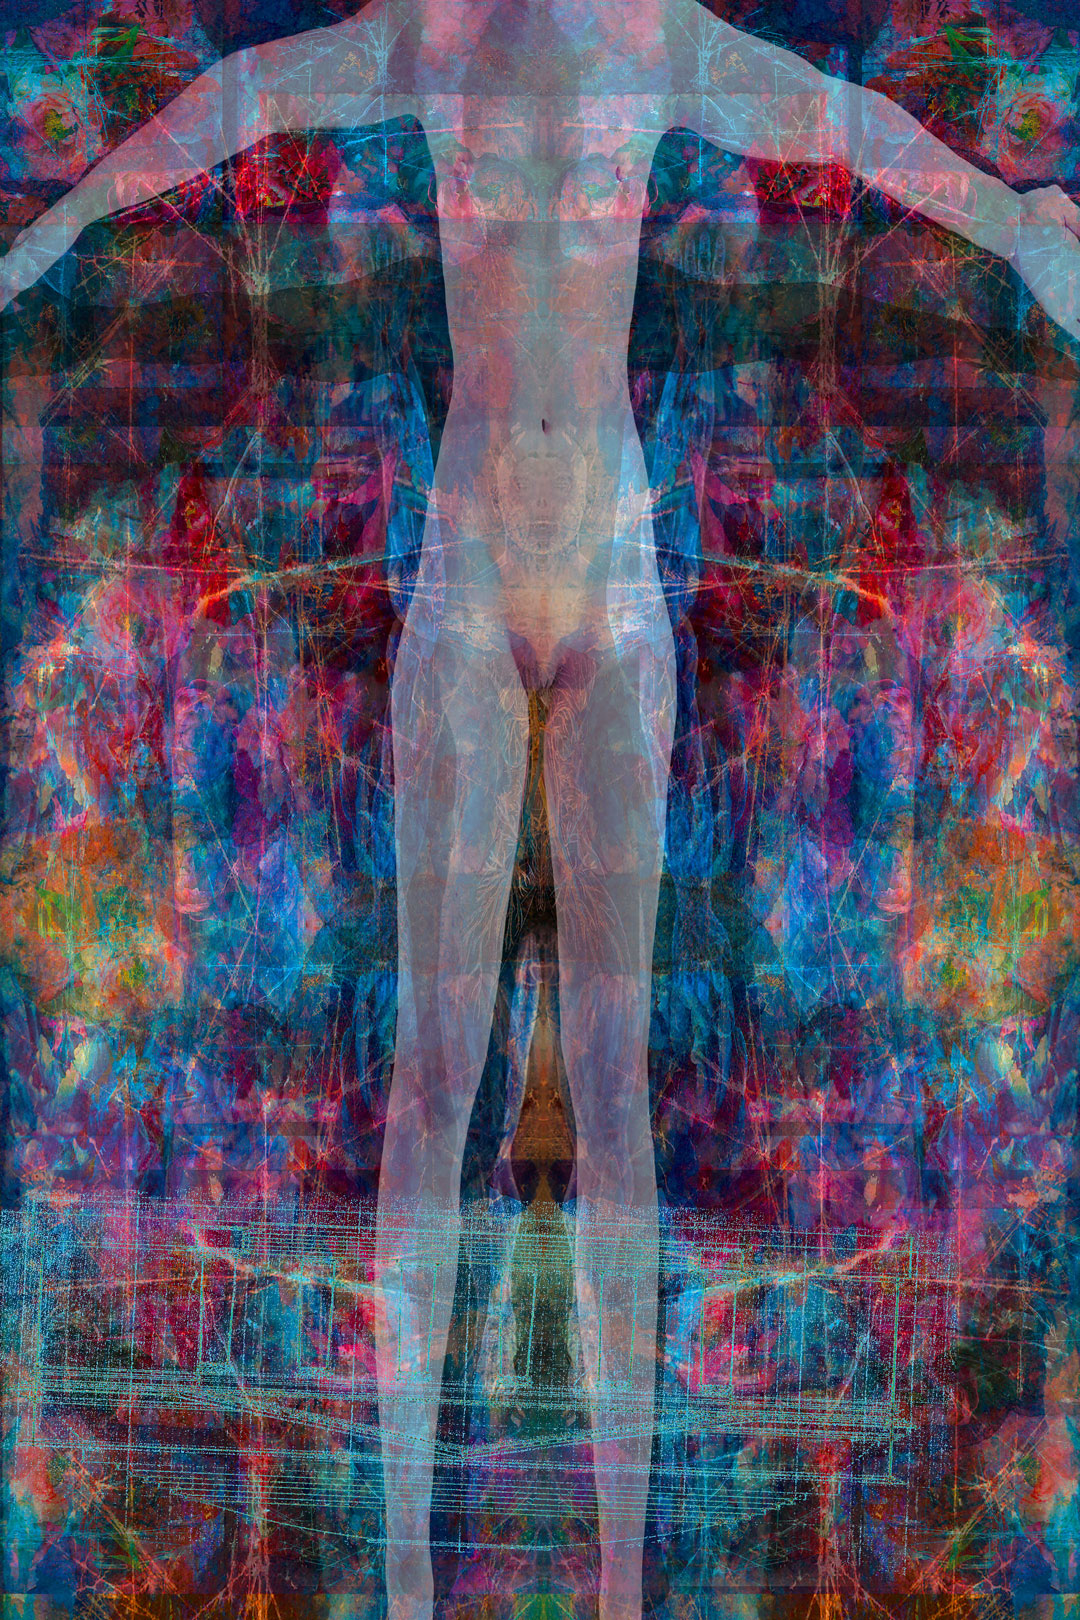   Shroud V, 2019   Digital image on paper  48 x 36 